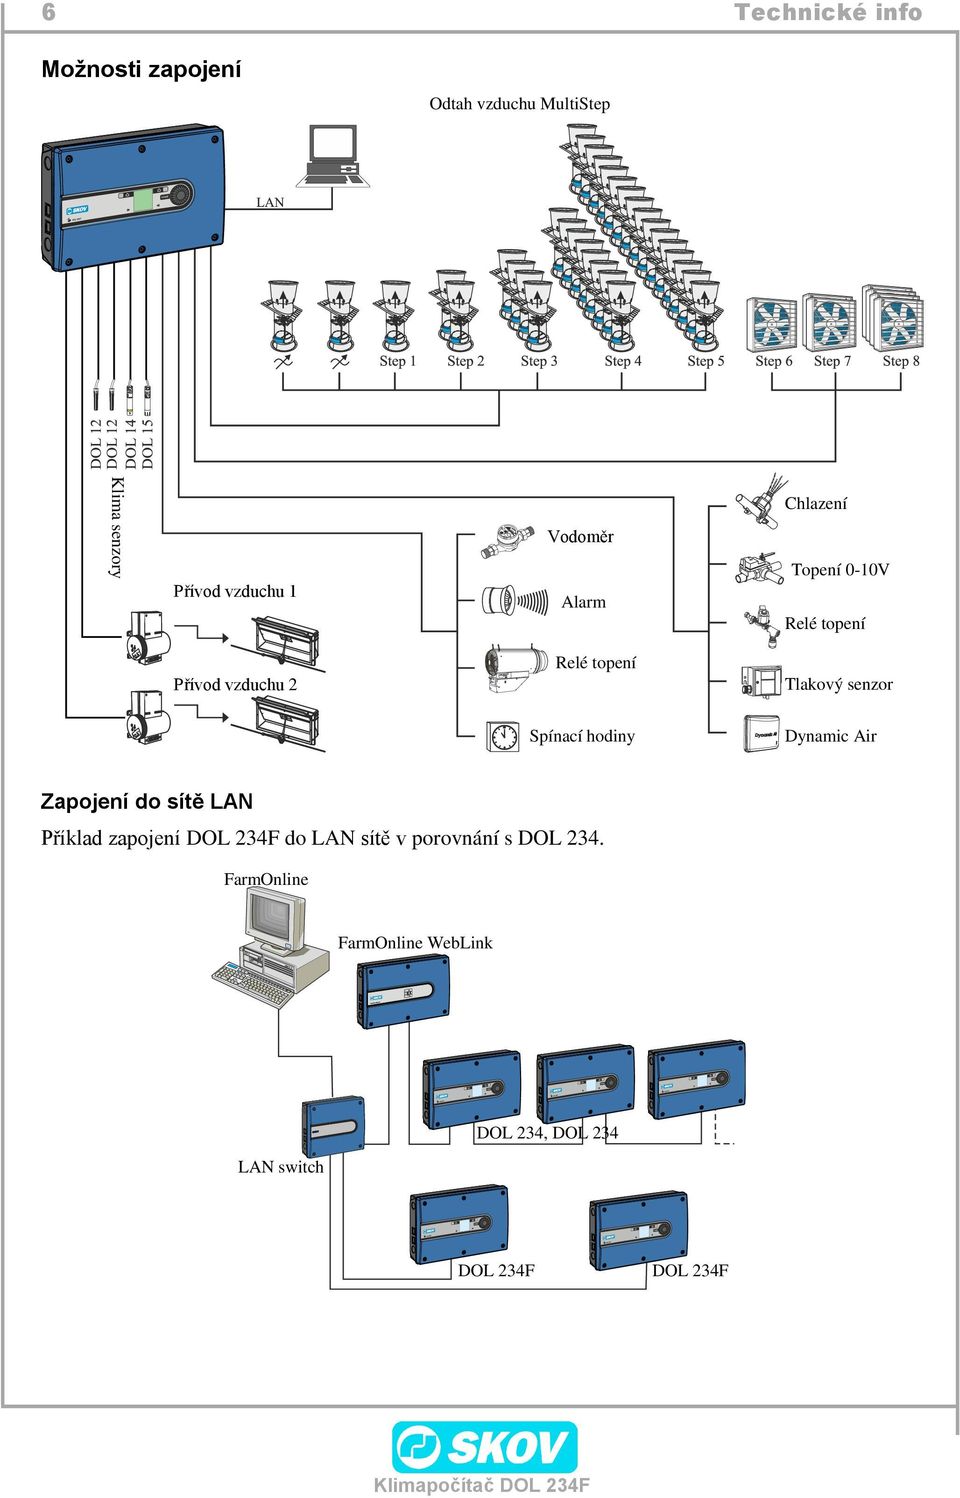 Dynamic Air Spínací hodiny Zapojení do sítě LAN Příklad zapojení DOL 234F do LAN sítě v